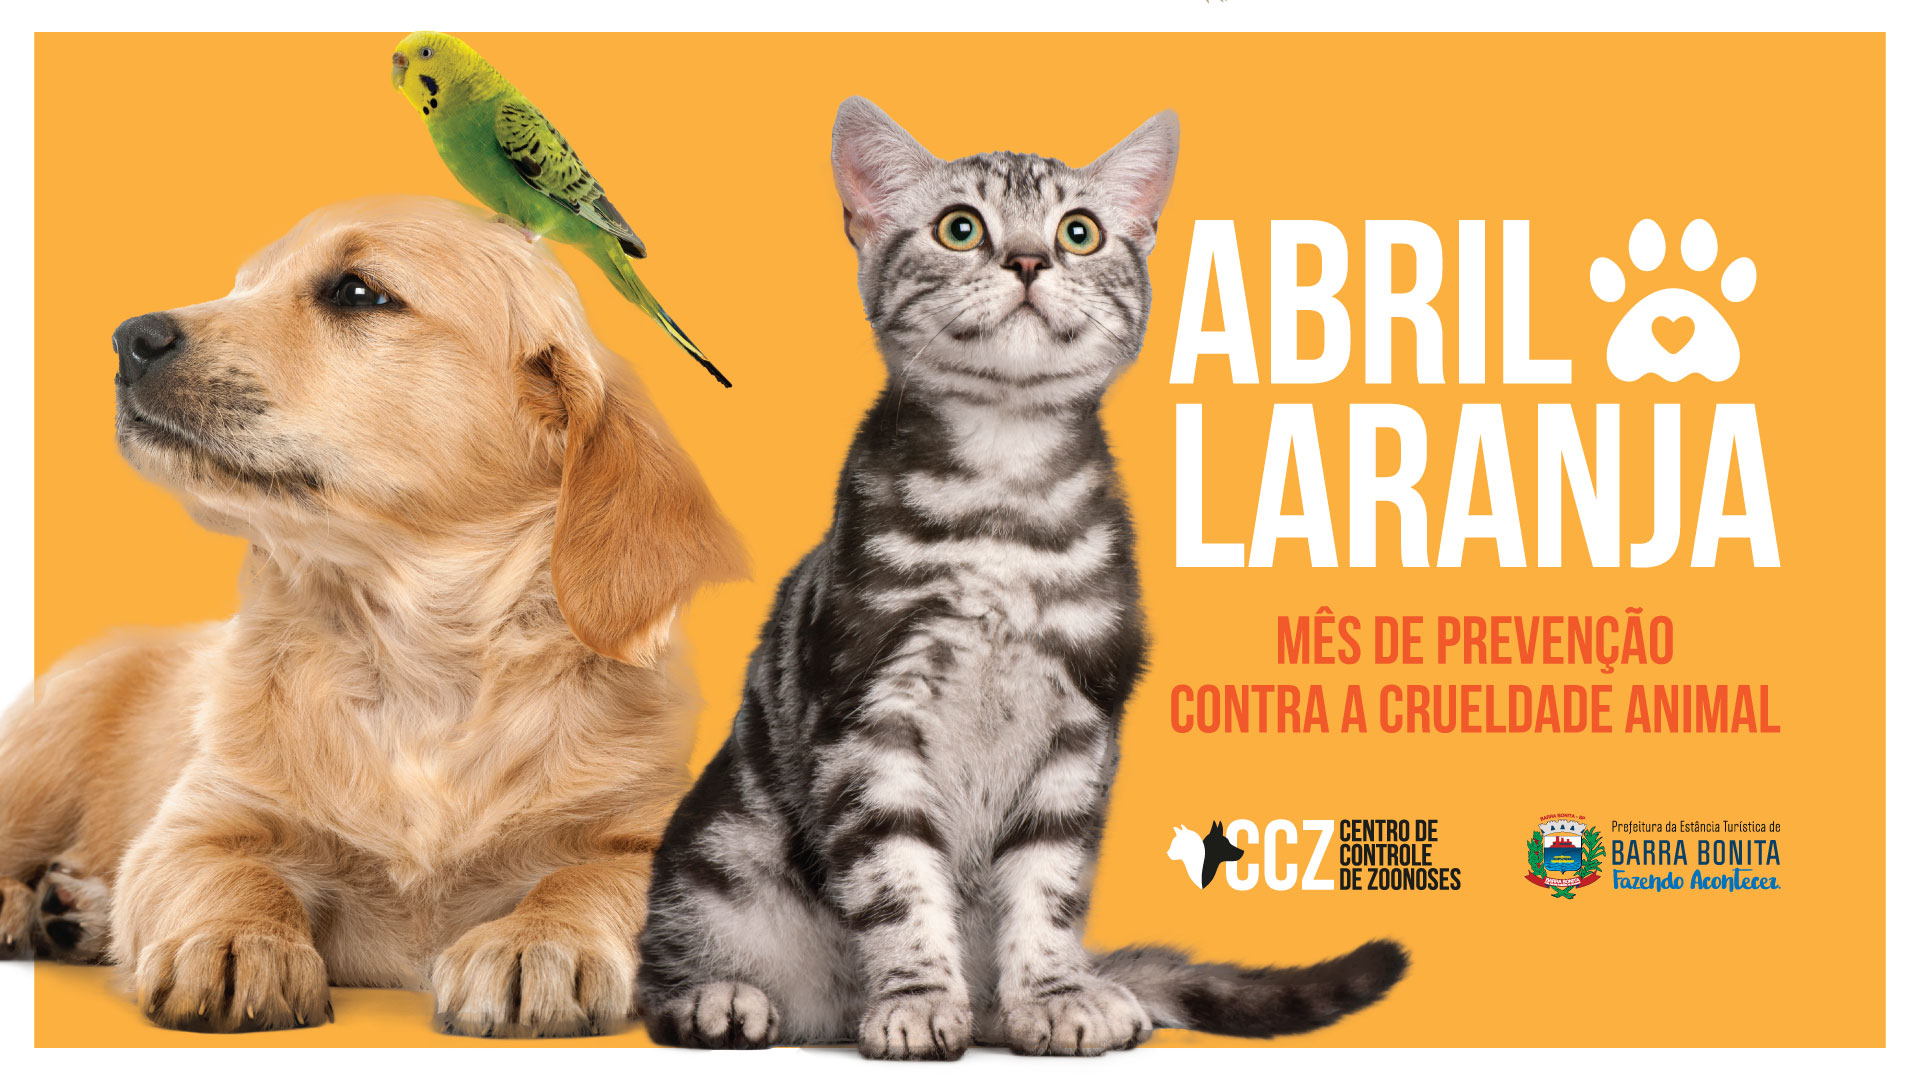 ABRIL LARANJA PROMOVE A PREVENÇÃO CONTRA A CRUELDADE ANIMAL